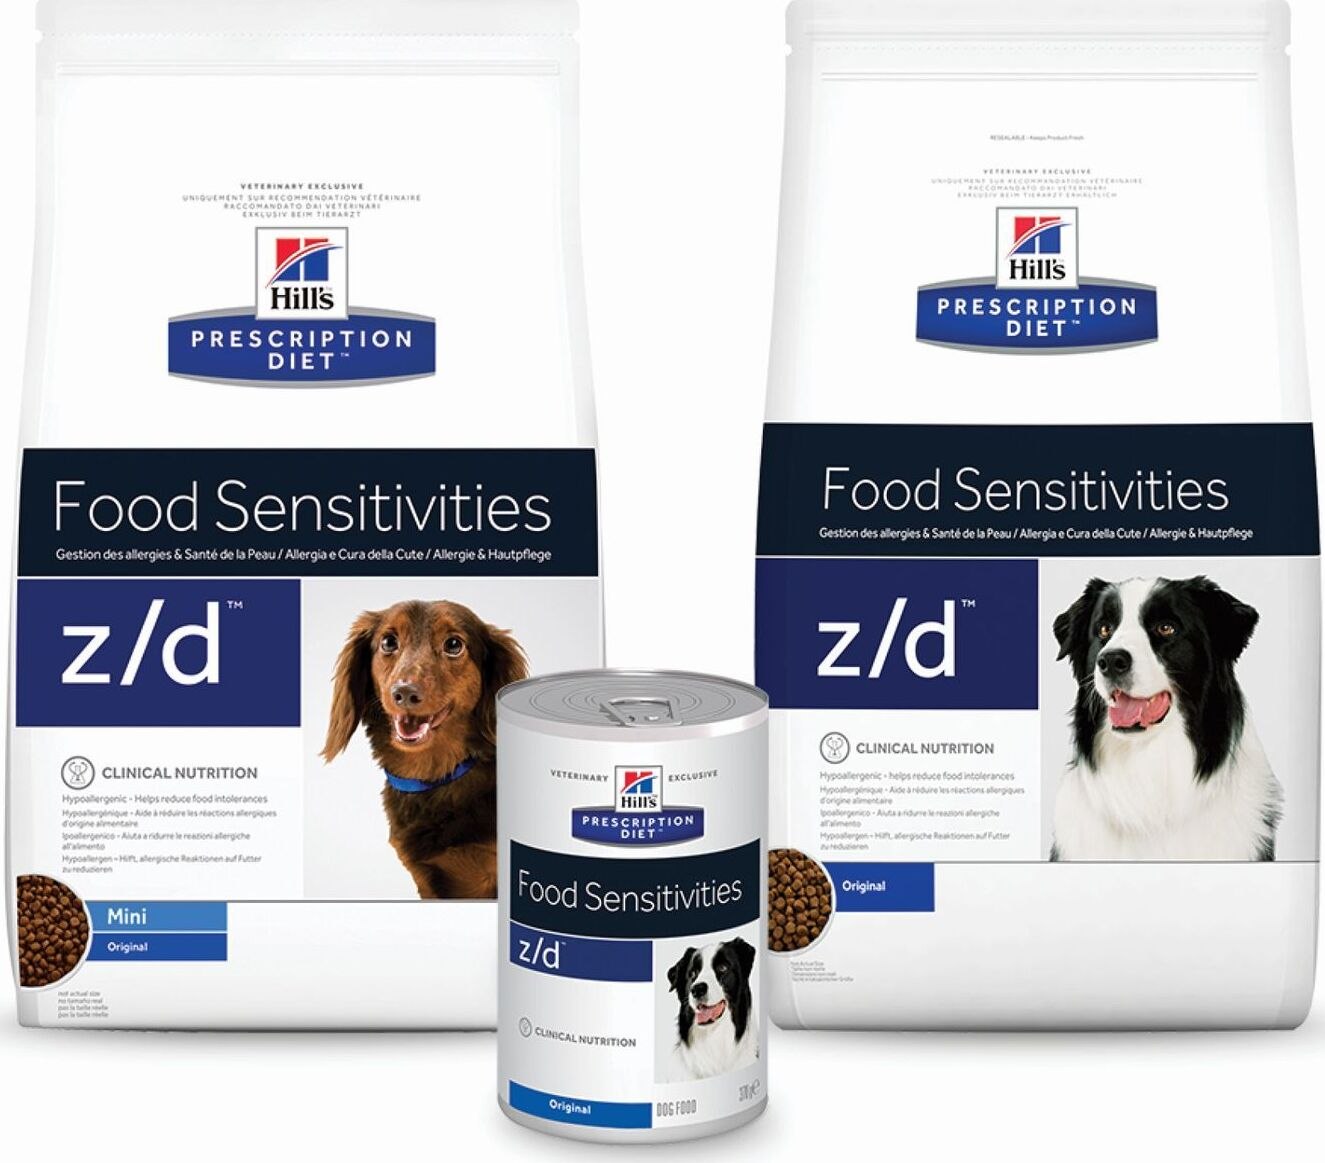 Hill's в россии. Hills Prescription Diet z/d для собак. Prescription Diet z/d food sensitivities для собак. Хиллс корм для собак i/d 12 кг. Корм Хиллс гипоаллергенный.